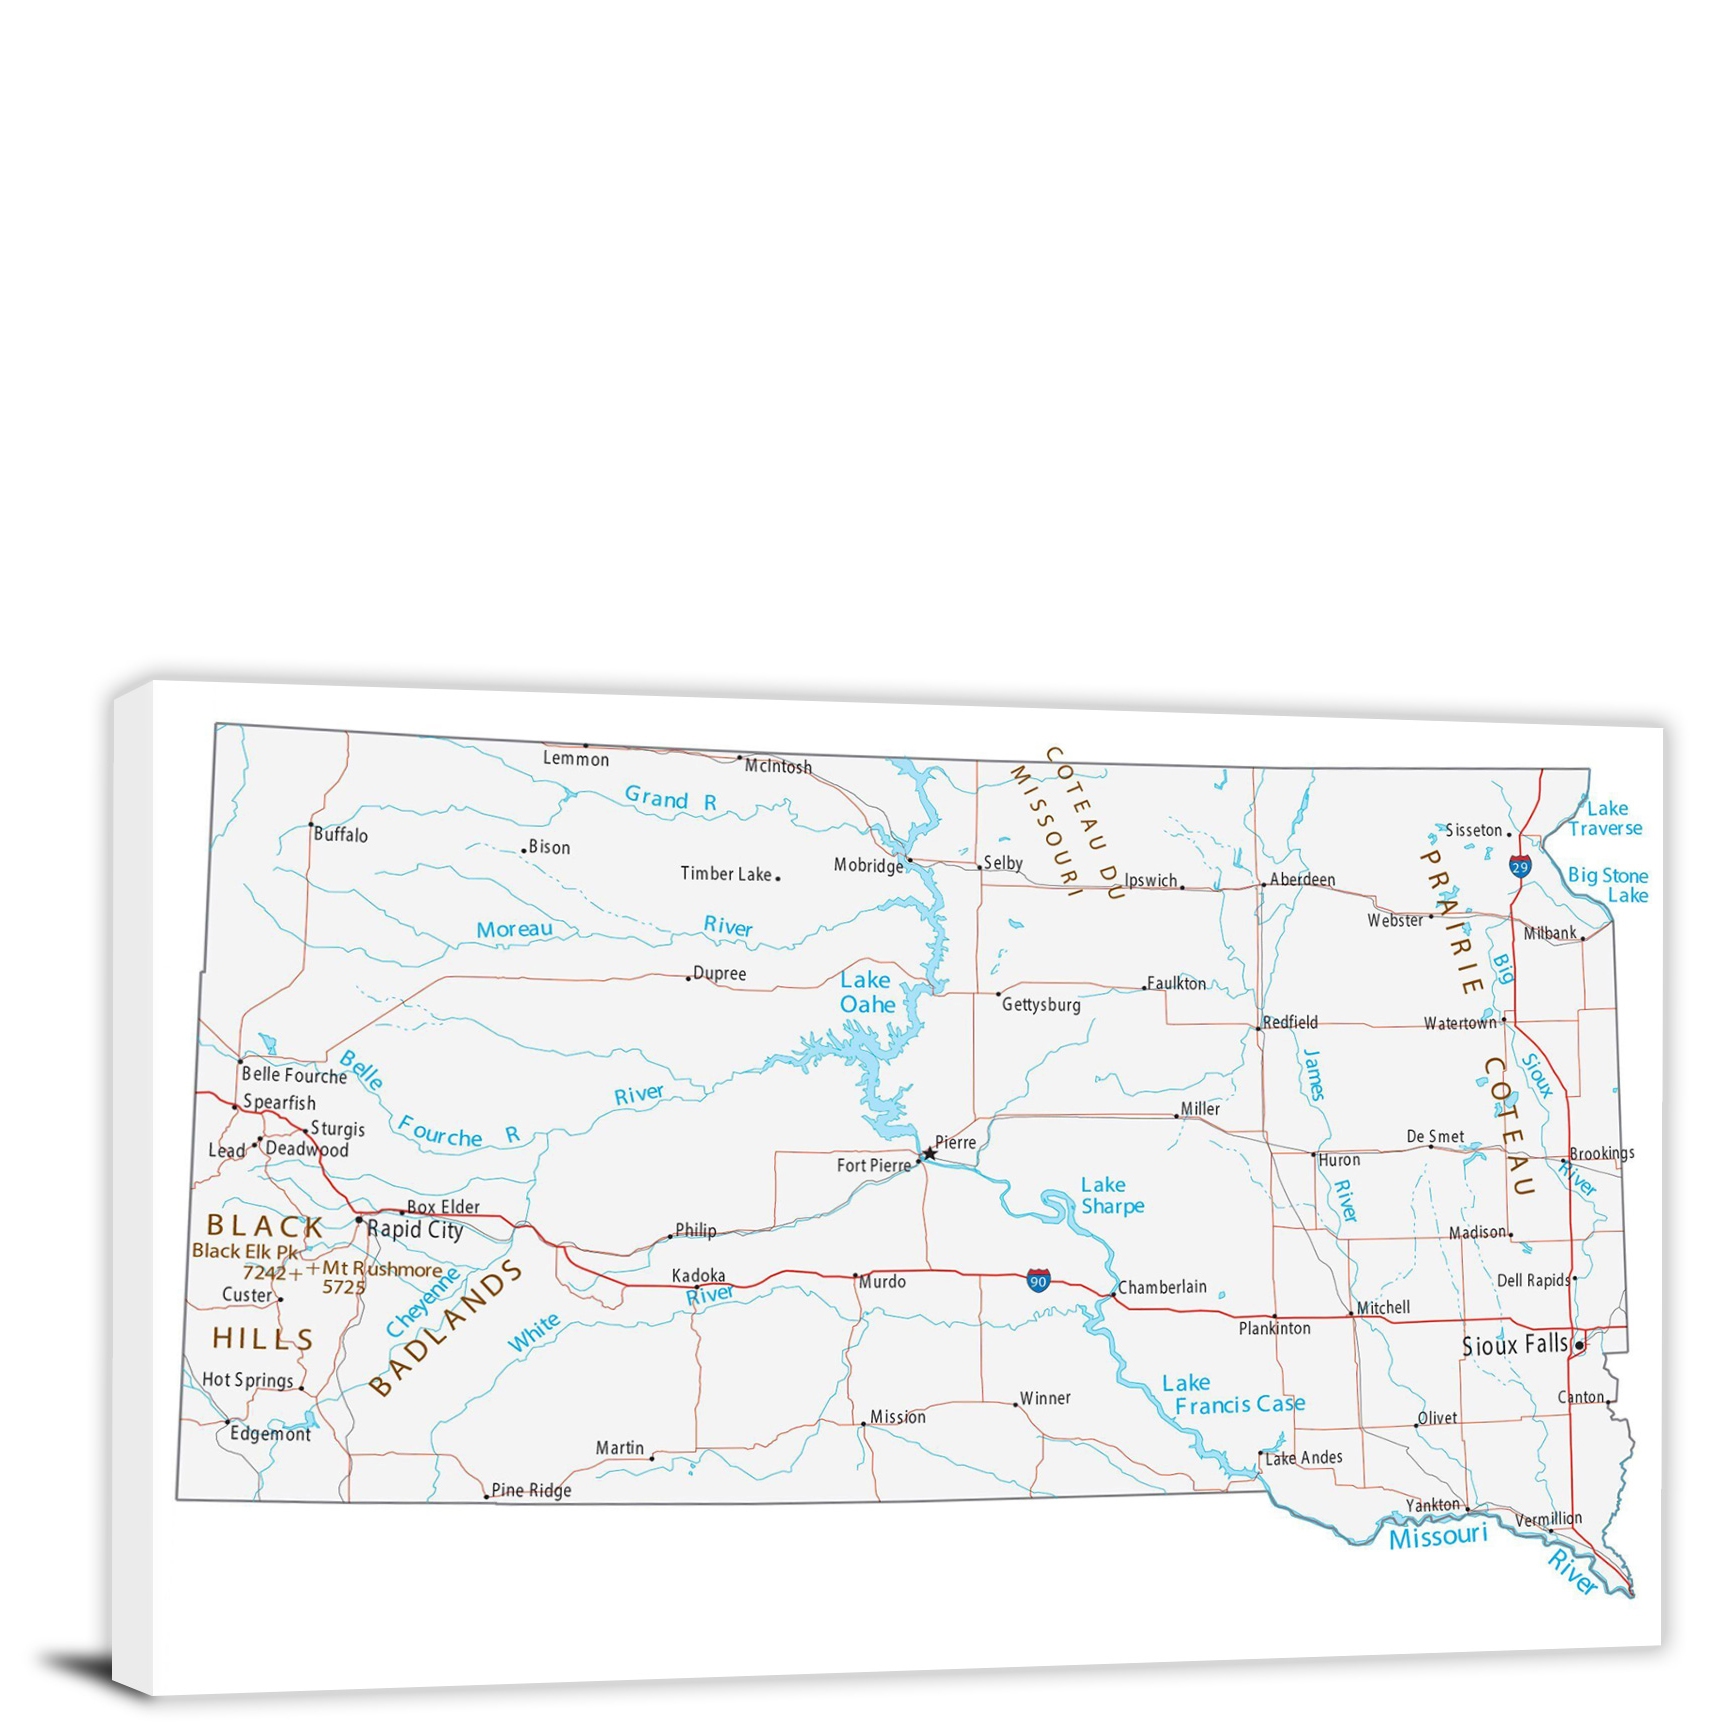 CWA747 South Dakota Roads And Cities Map 00 